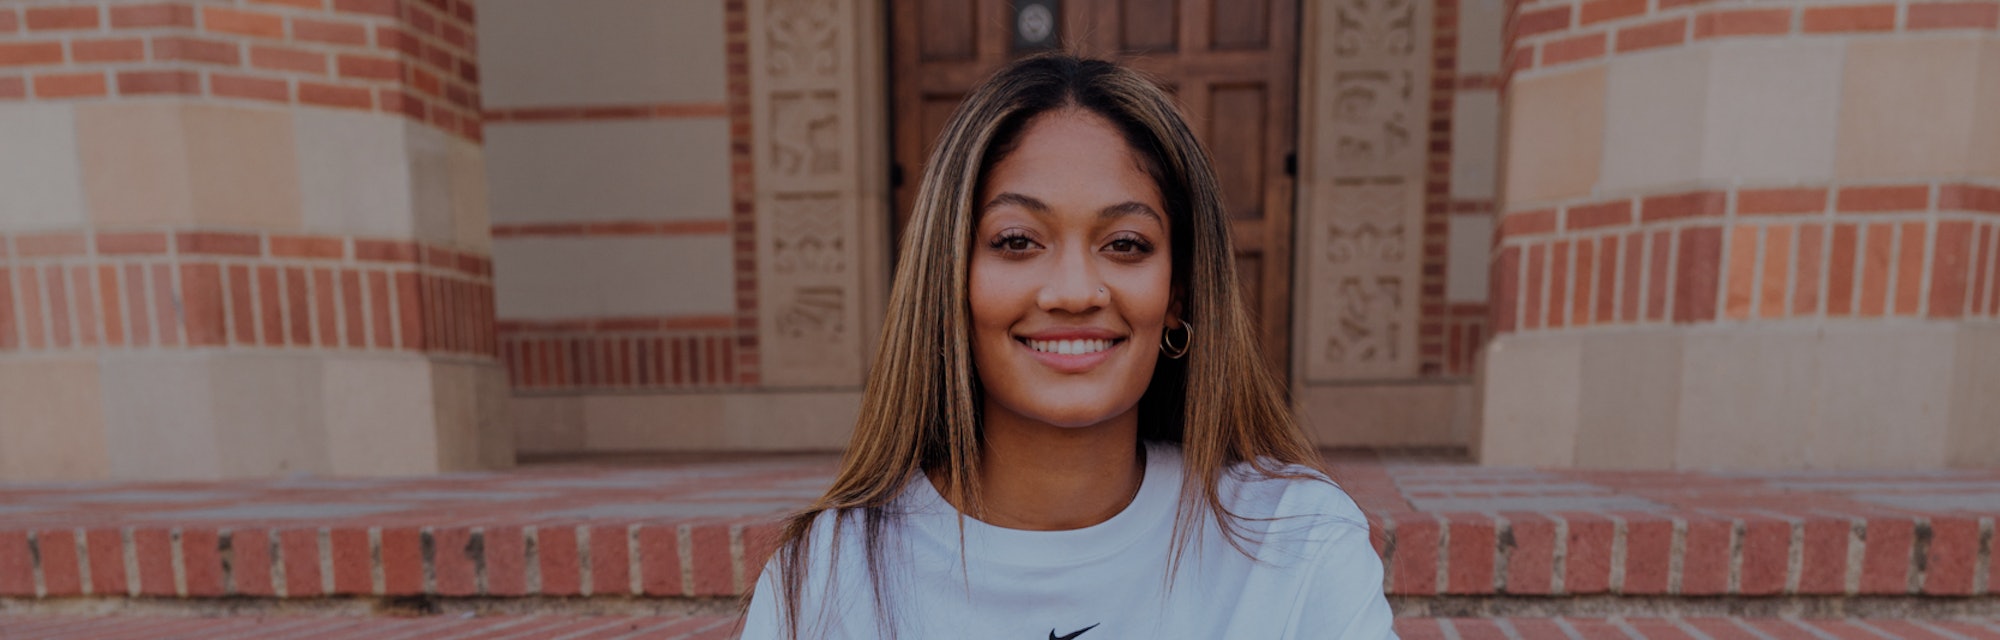 Reilyn Turner, Nike's first sponsored collegiate athlete